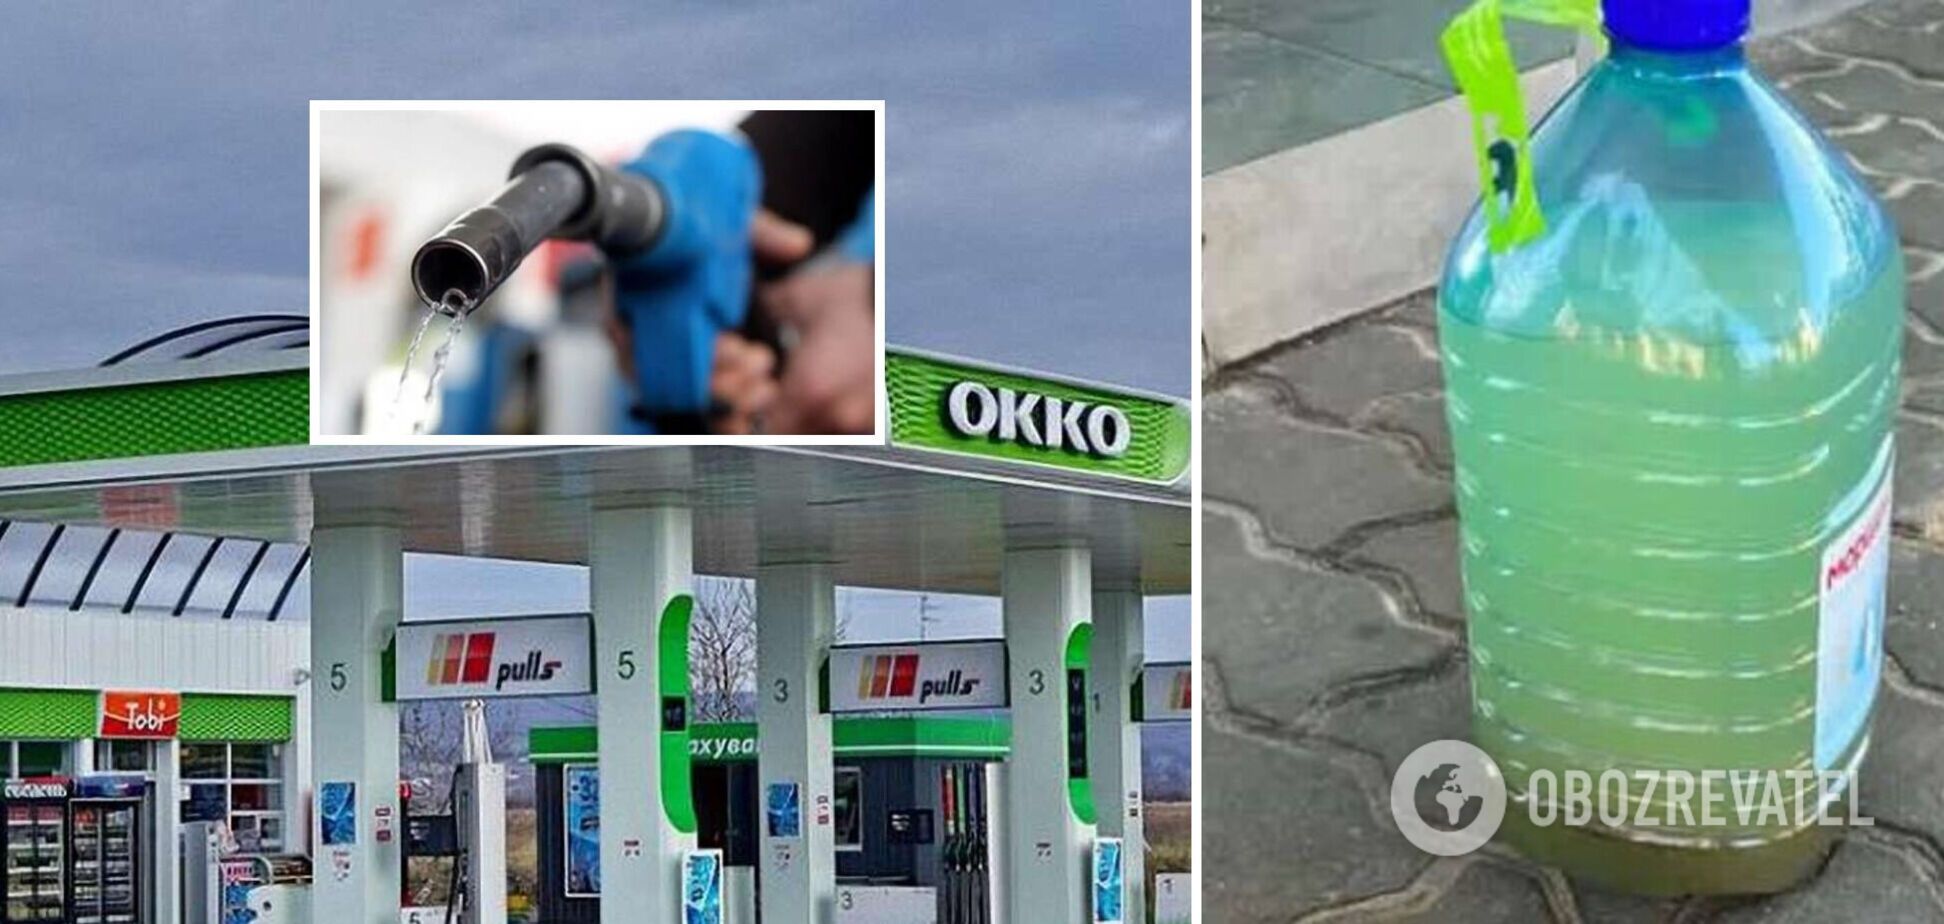 Експерт назвав ймовірні причини того, як у бензин могла потрапити вода на АЗС OKKO